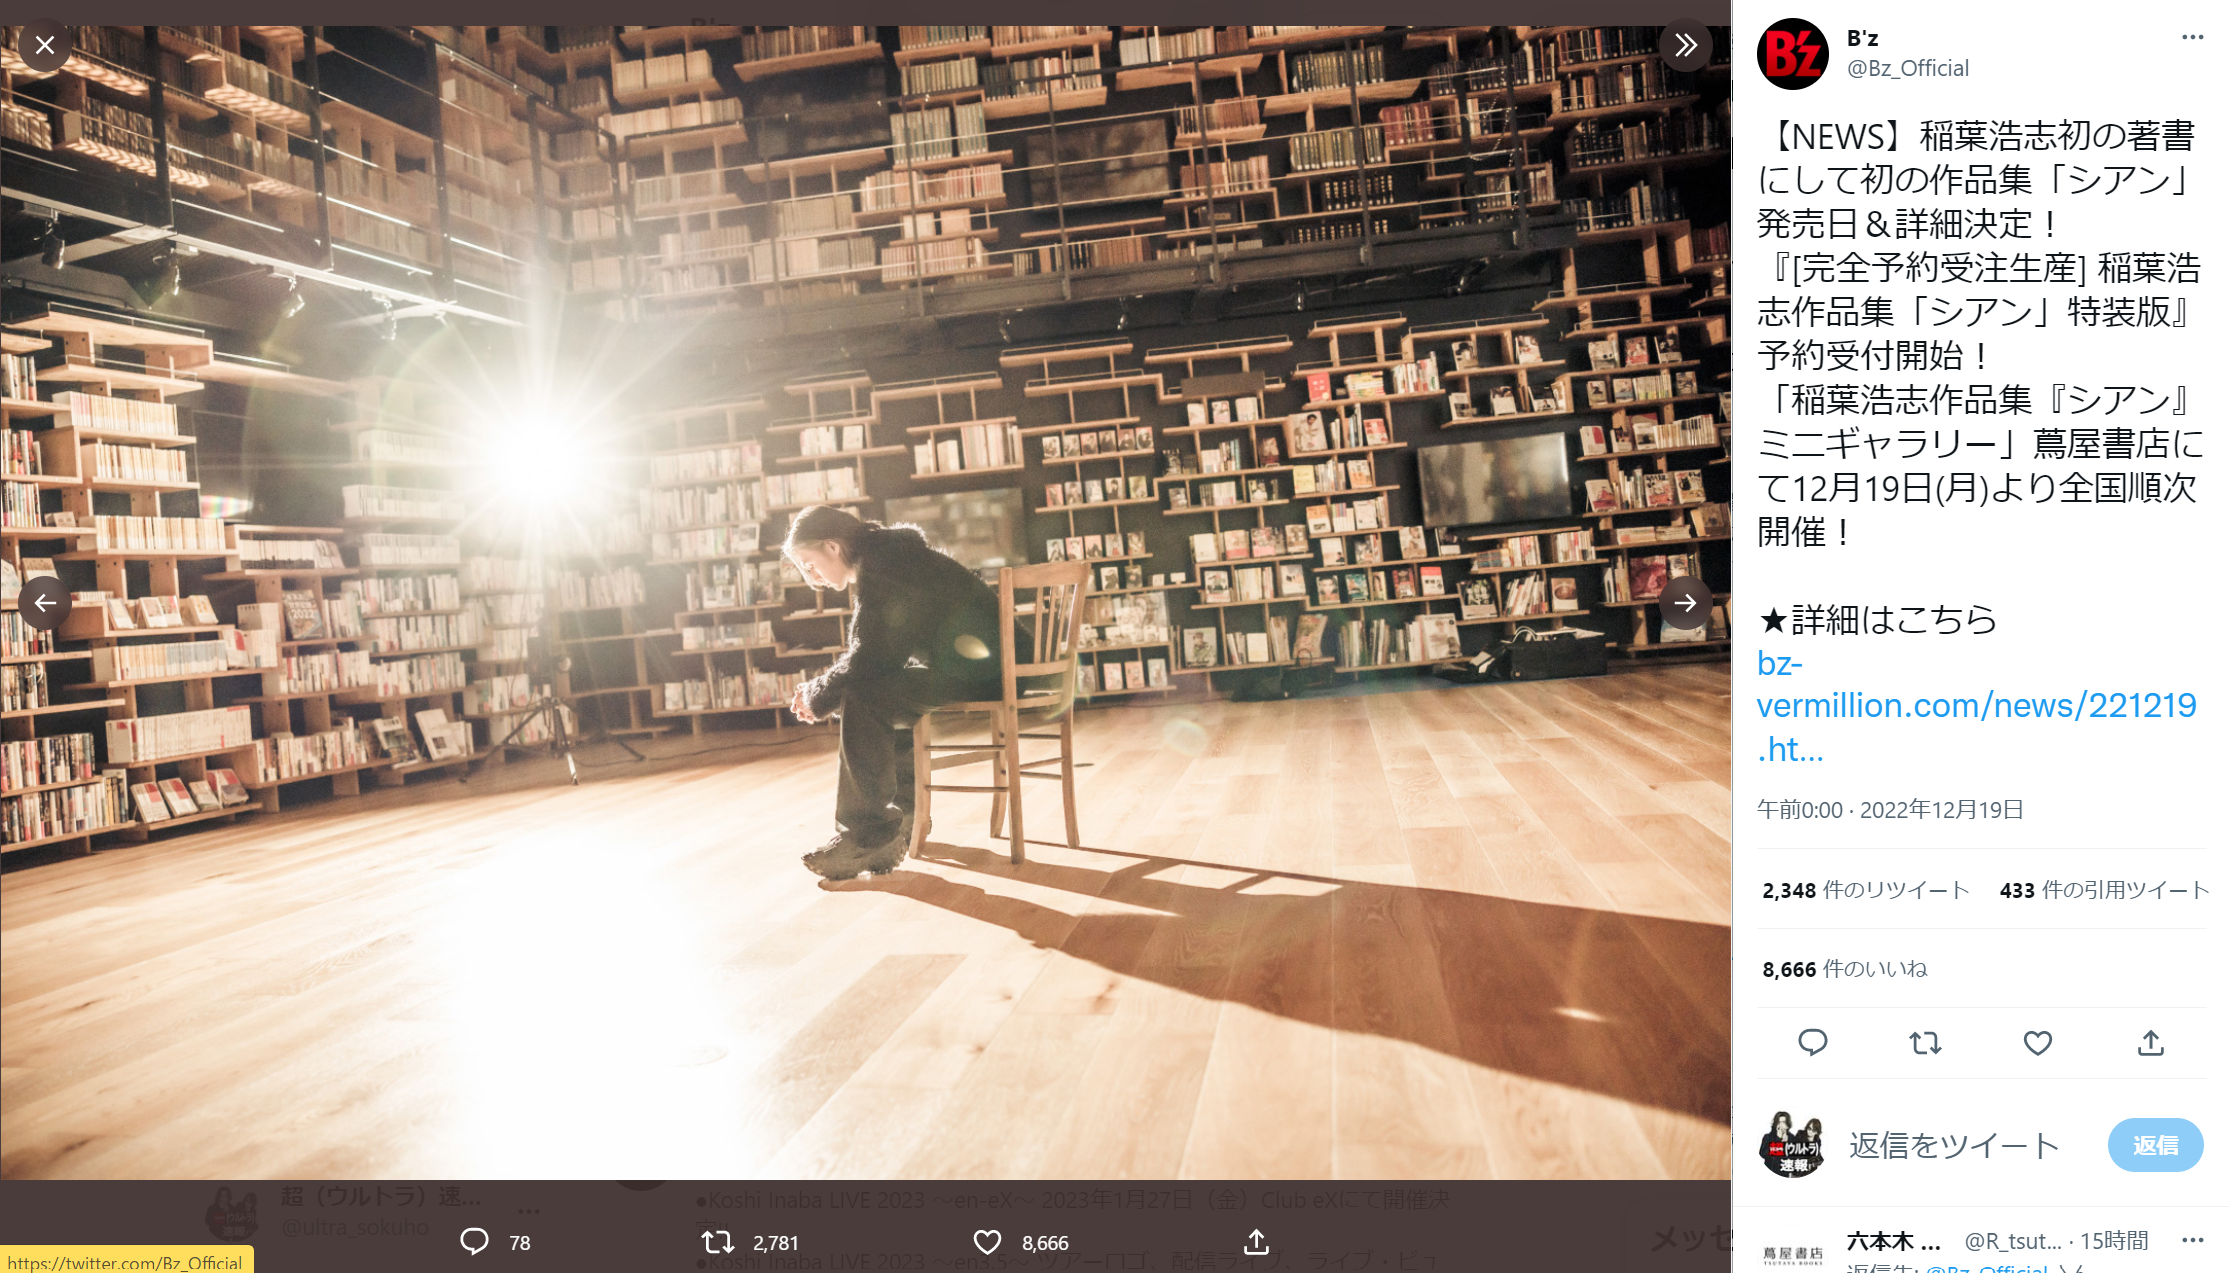 角川武蔵野ミュージアムの本棚劇場で撮影されたとみられる稲葉浩志「シアン」の宣材写真のキャプチャ画像